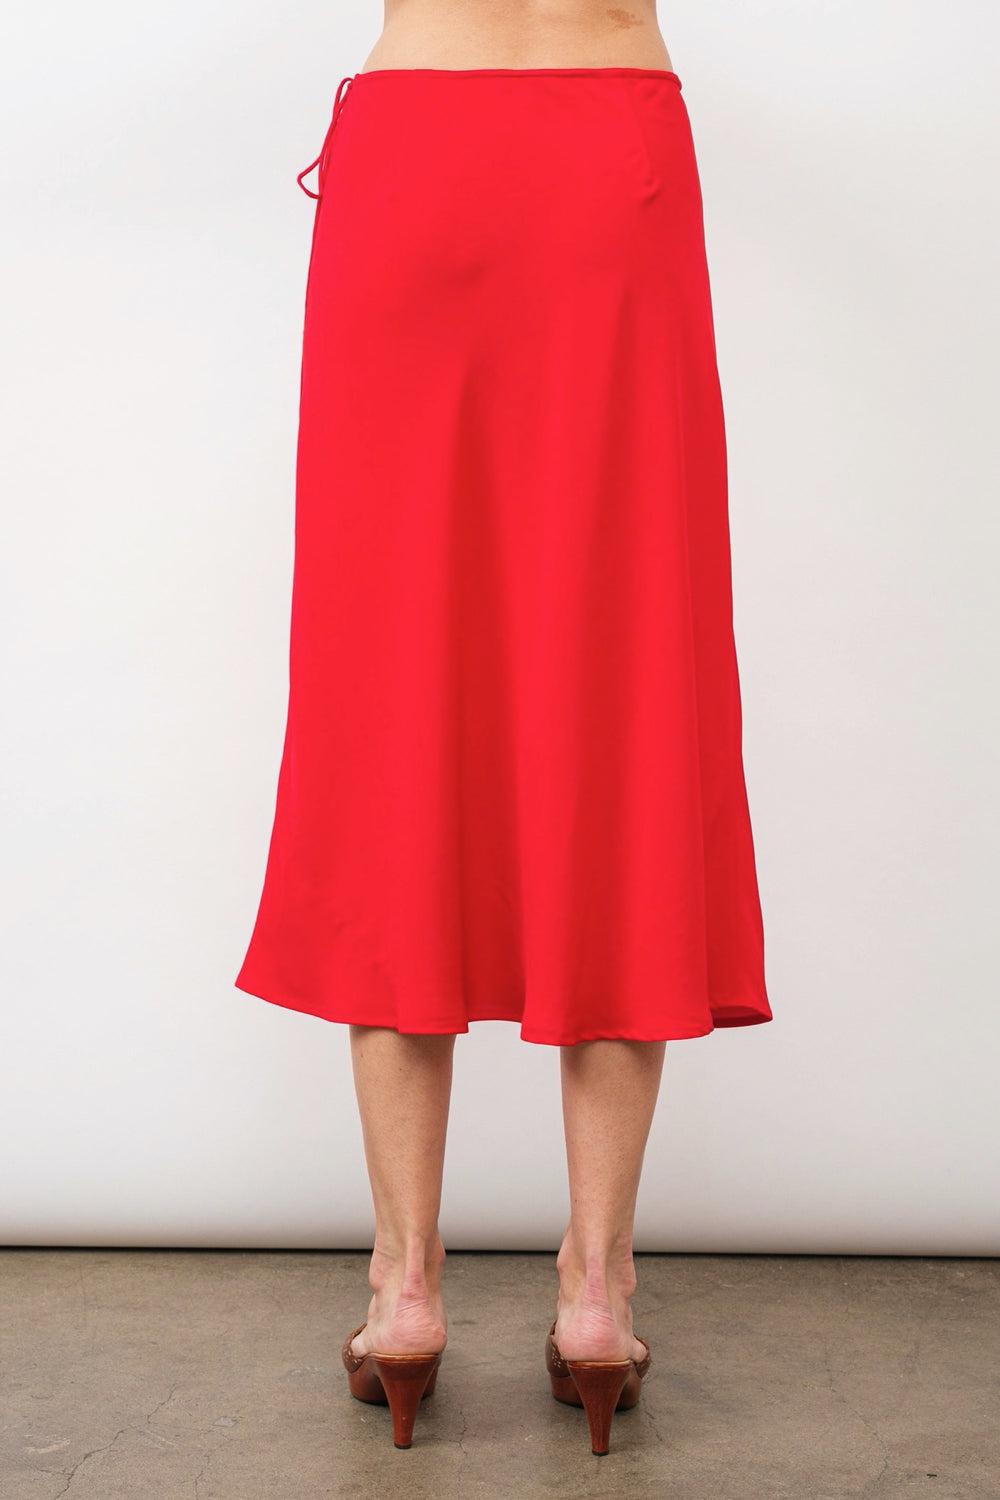 Red Christy Skirt